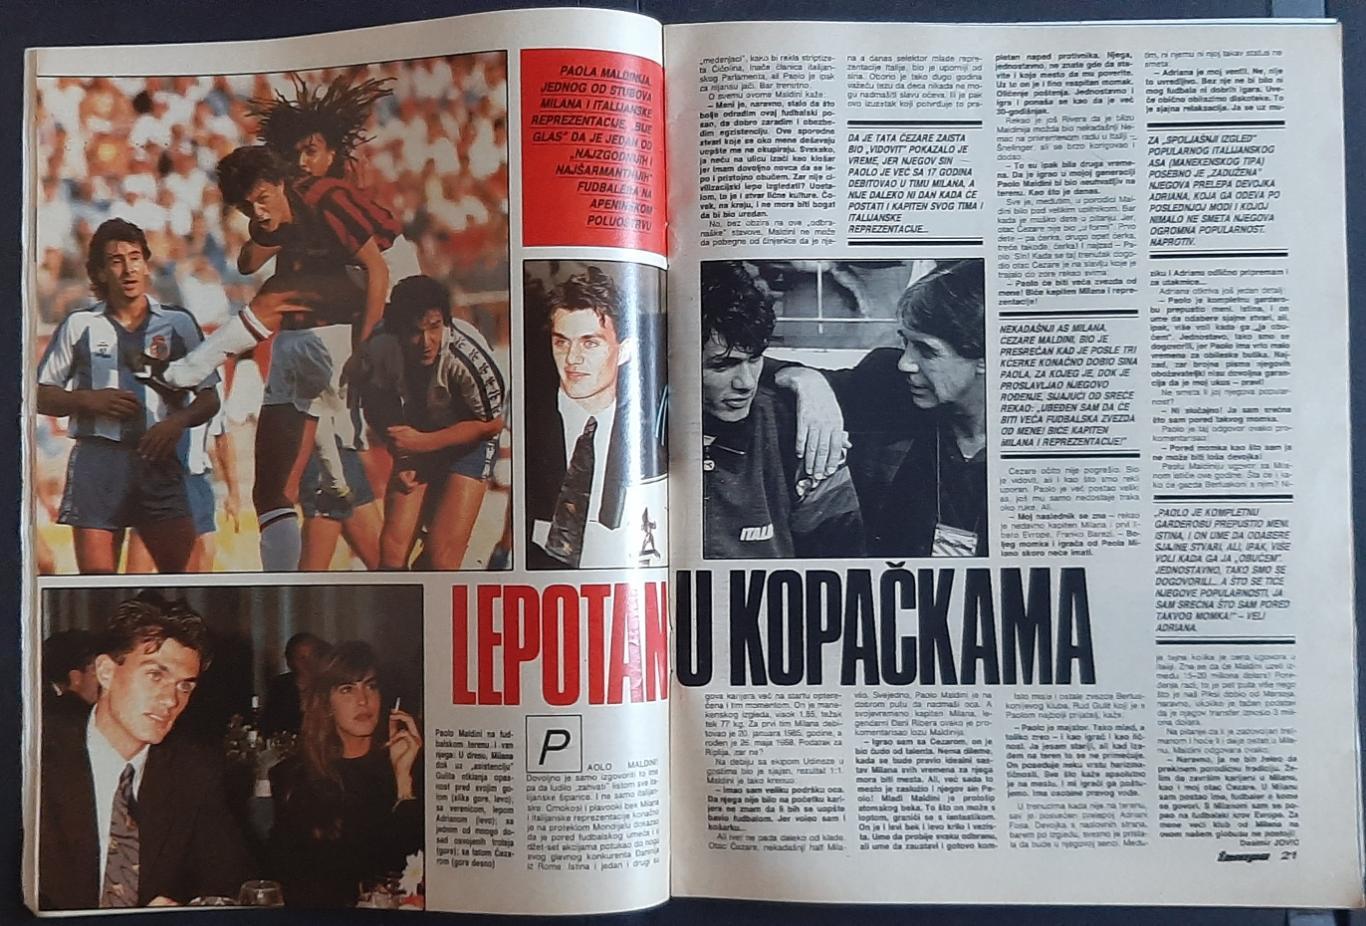 Журнал Tempo 1990 постери Каніджа,Бреме зб.Югославії, легка атлетика. 3